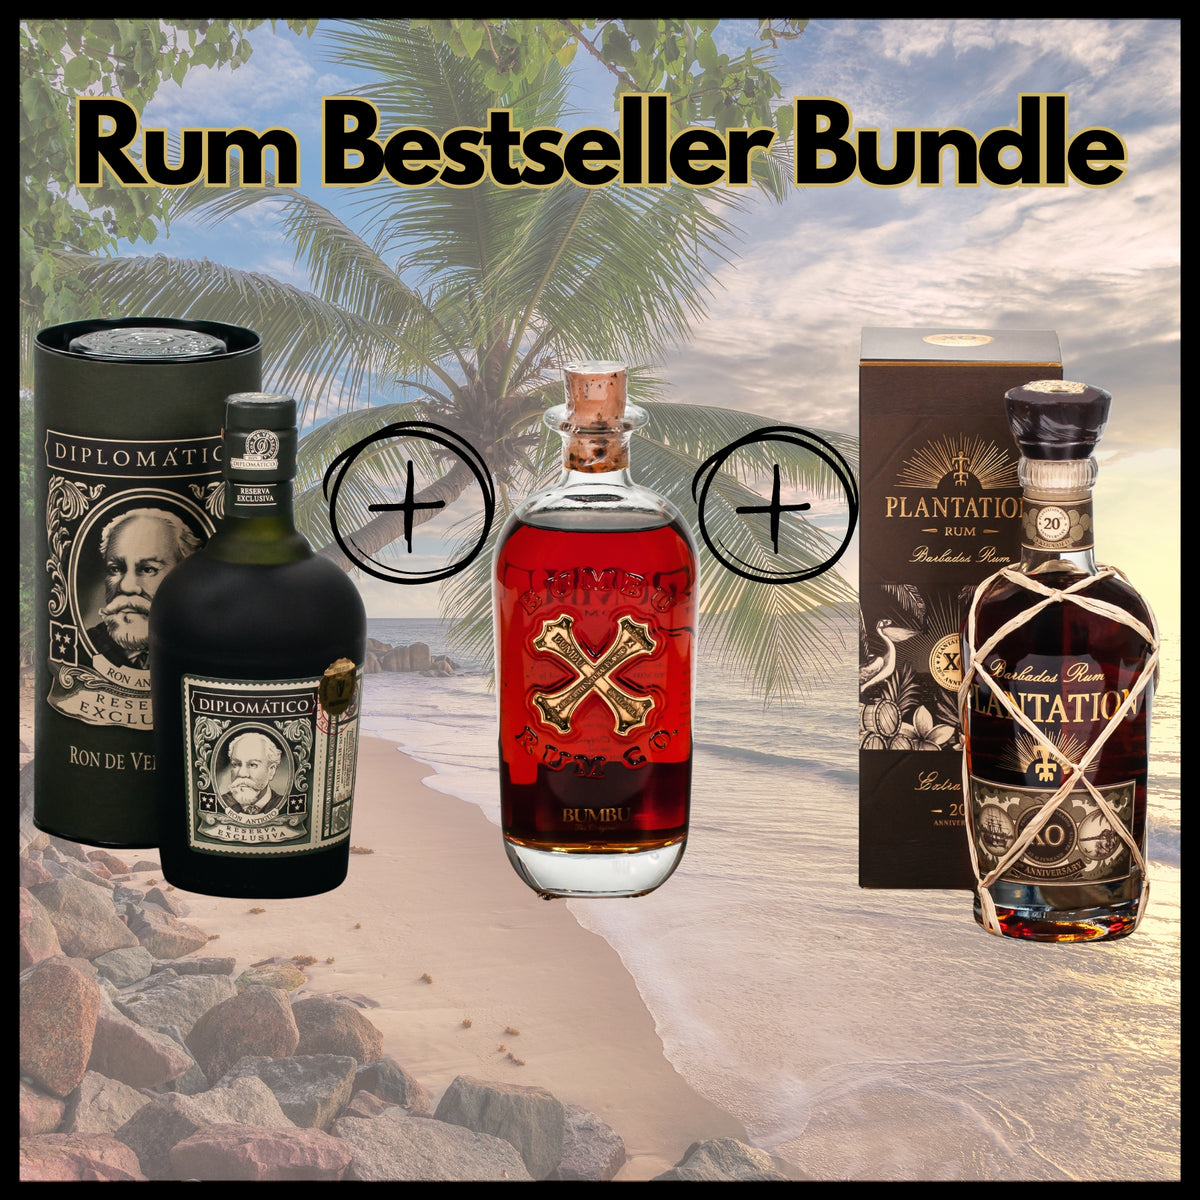 Rum Bestseller Bundle